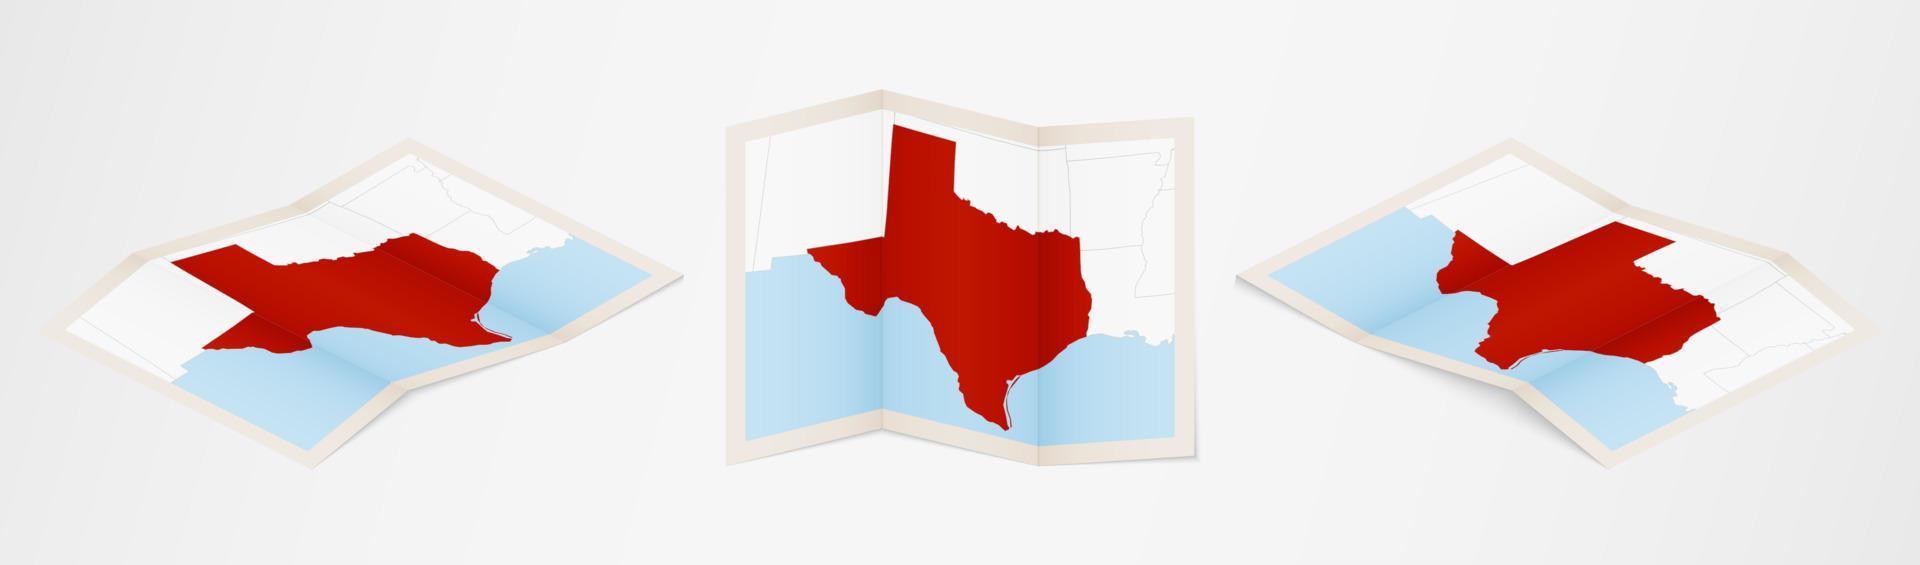 Faltkarte von Texas in drei verschiedenen Versionen. vektor